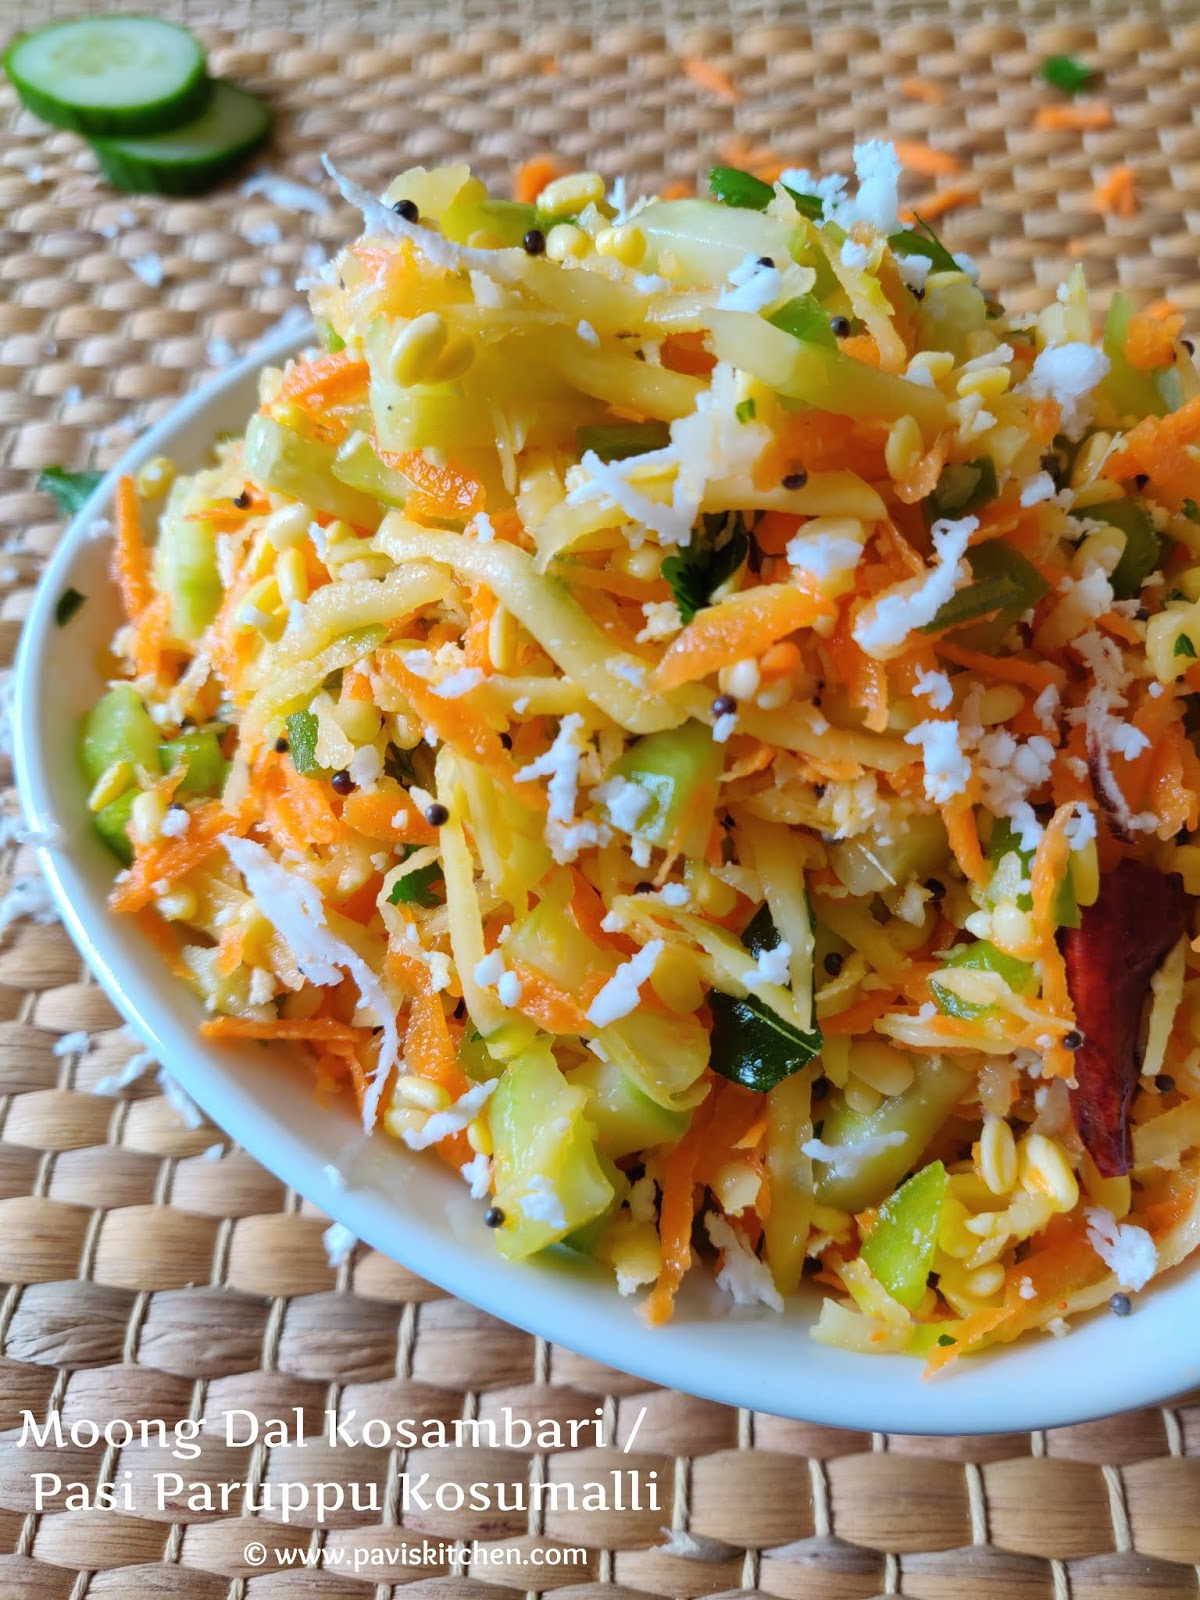 Moong Dal Kosambari | Pasi Paruppu Kosumalli | Moong Dal Vegetable Salad